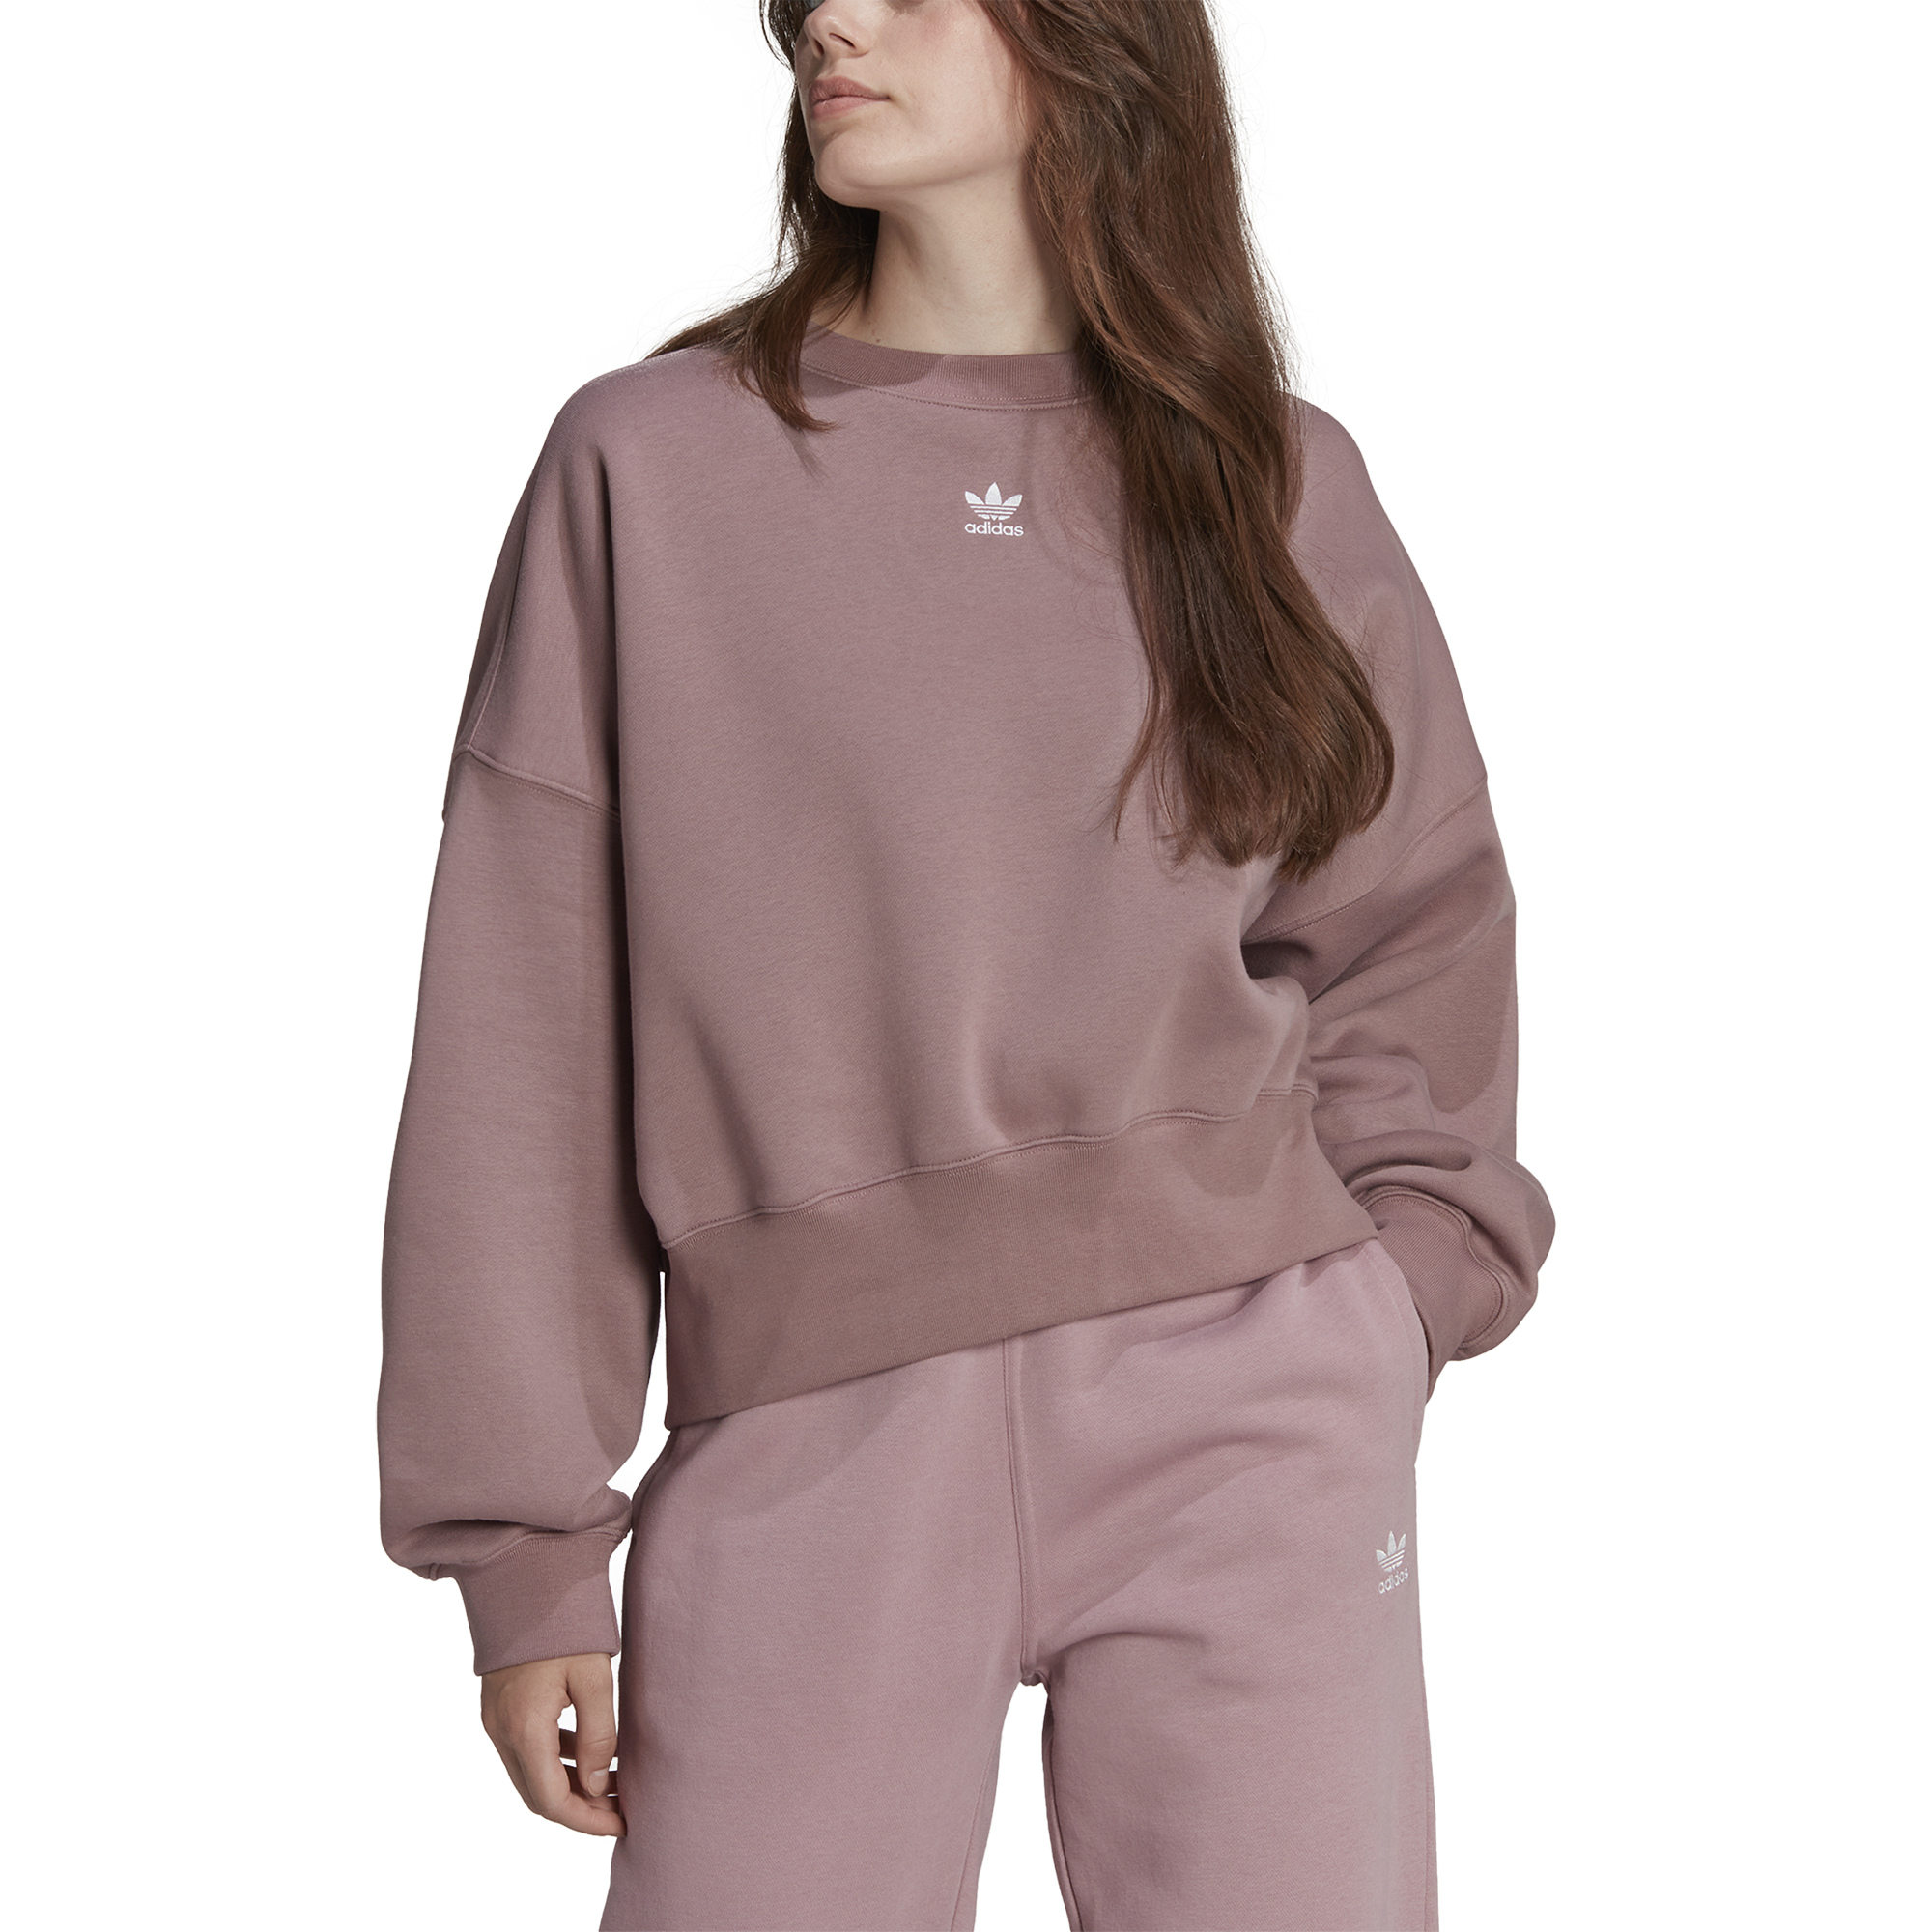 adidas Originals Adicolor Essentials Fleece Sweatshirt - Women's